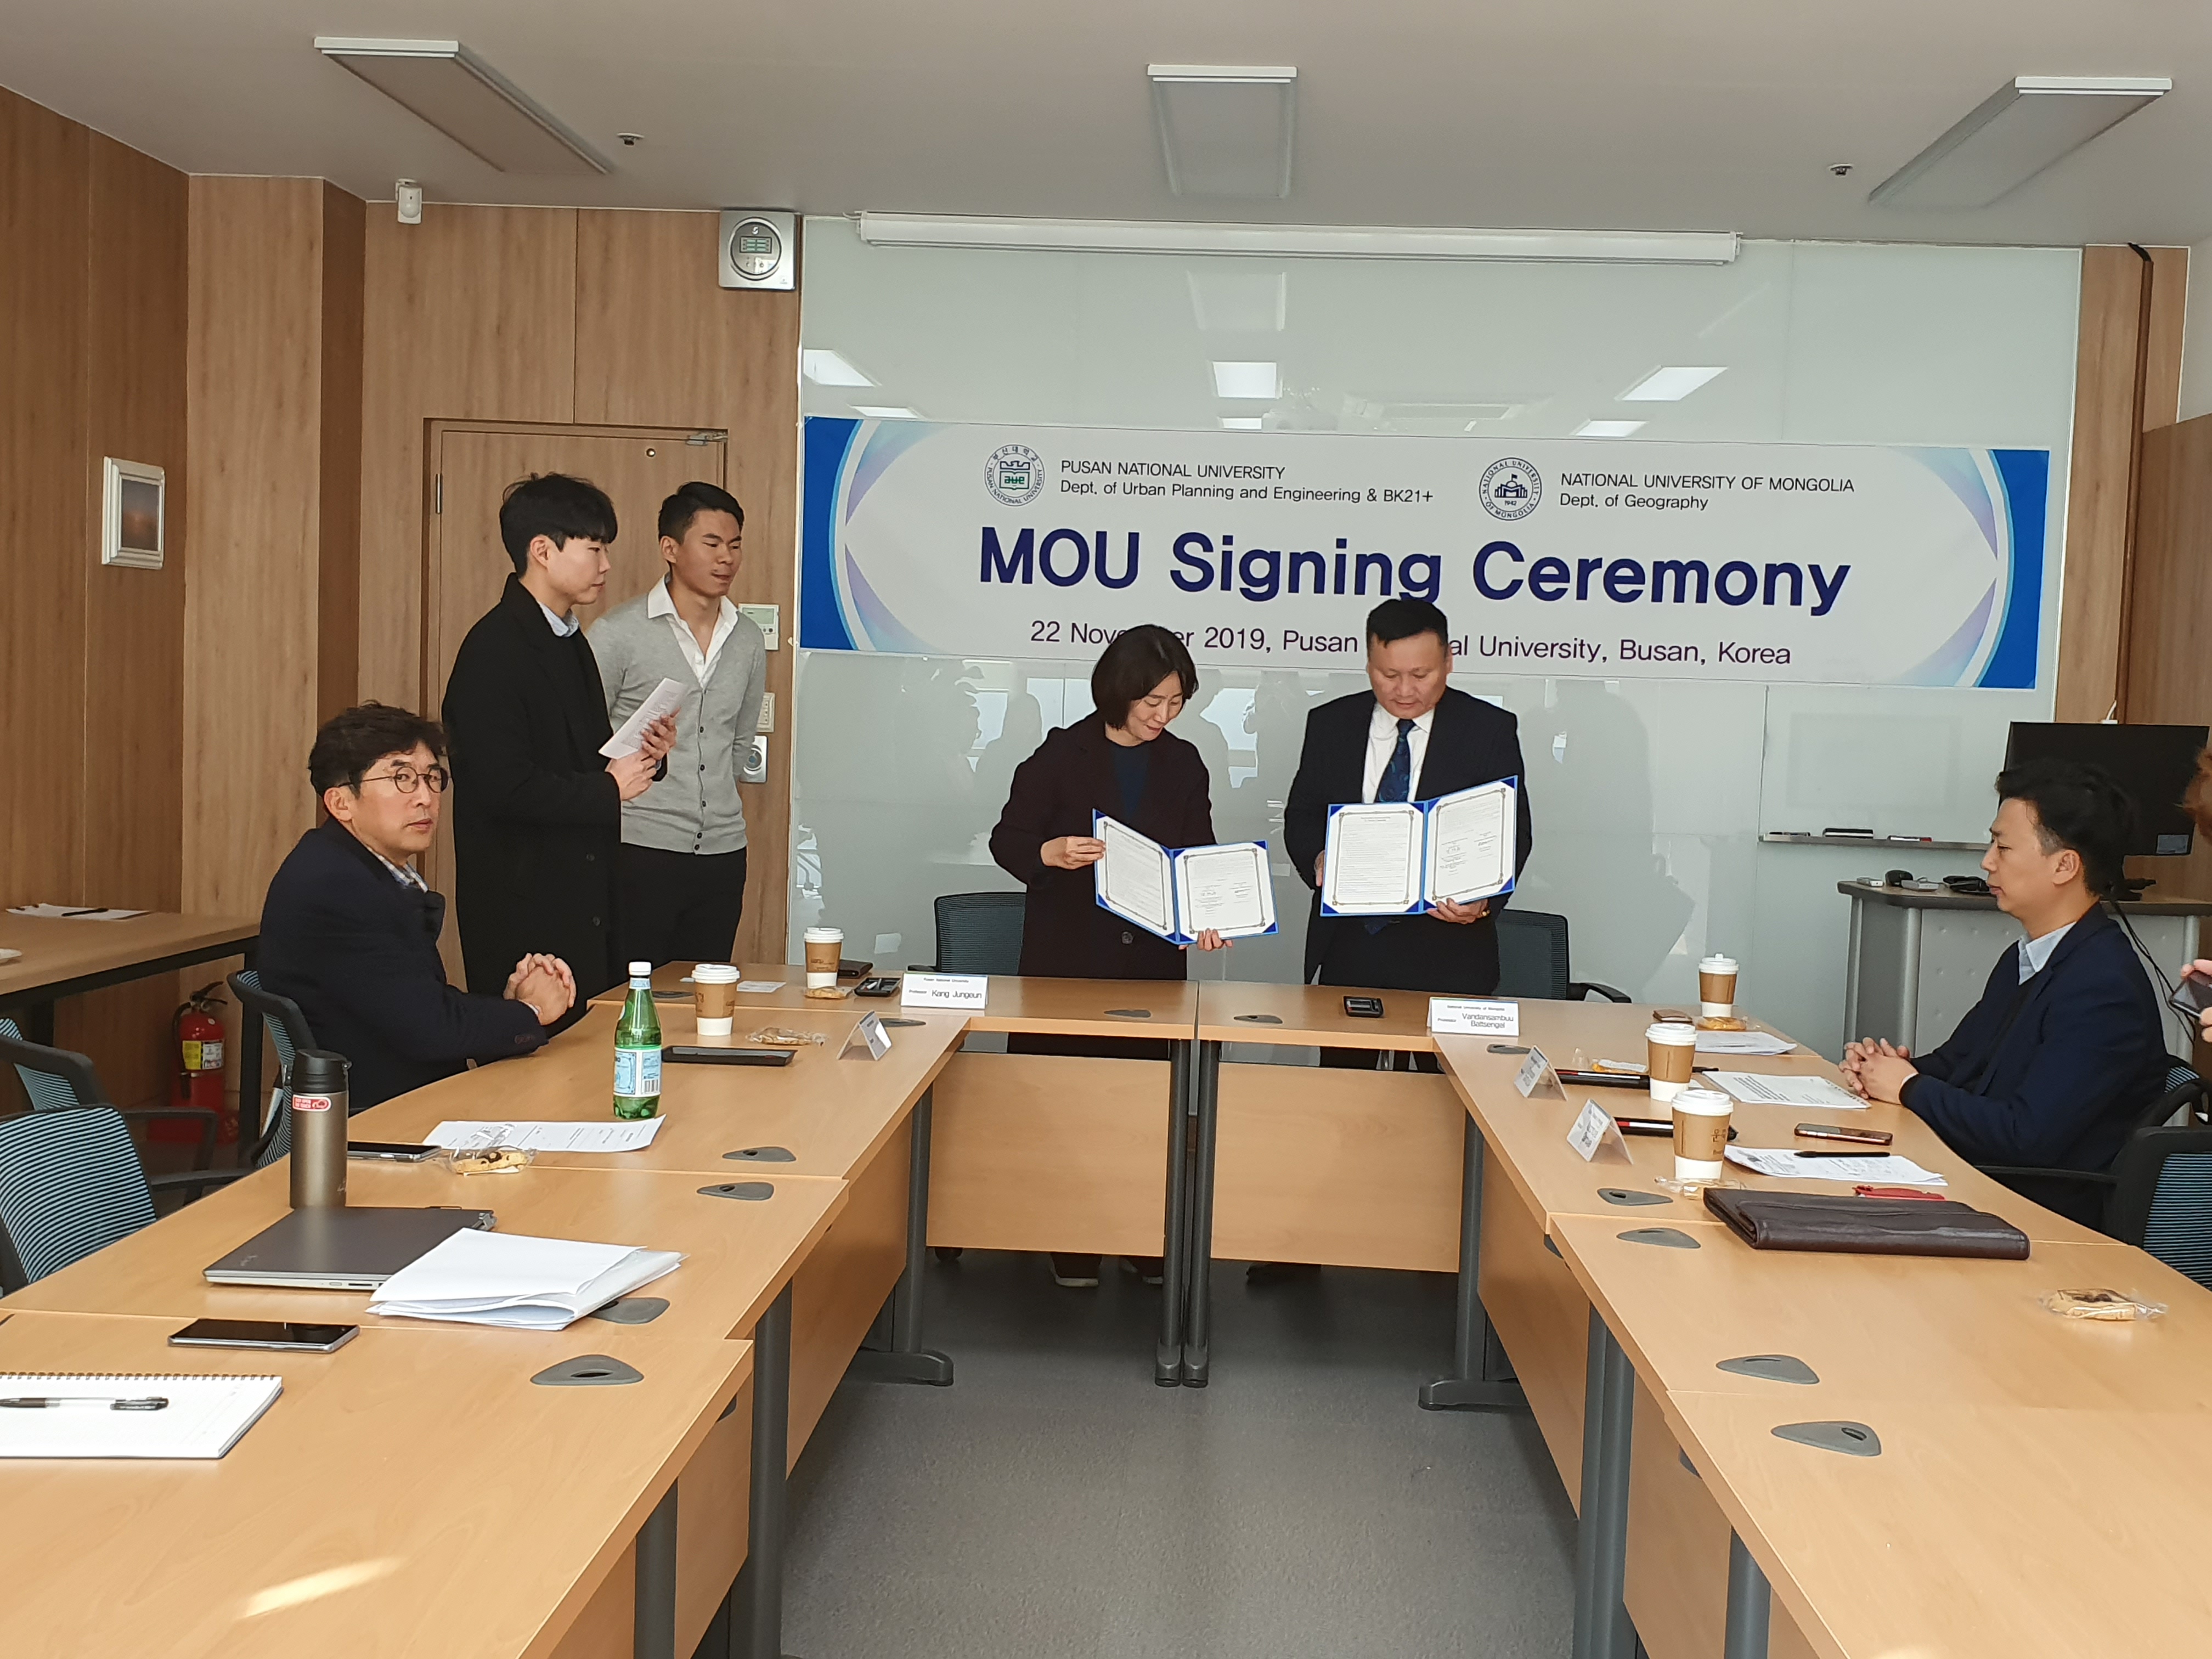 몽골국립대학교 MOU 체결 몽골 MOU2.jpg